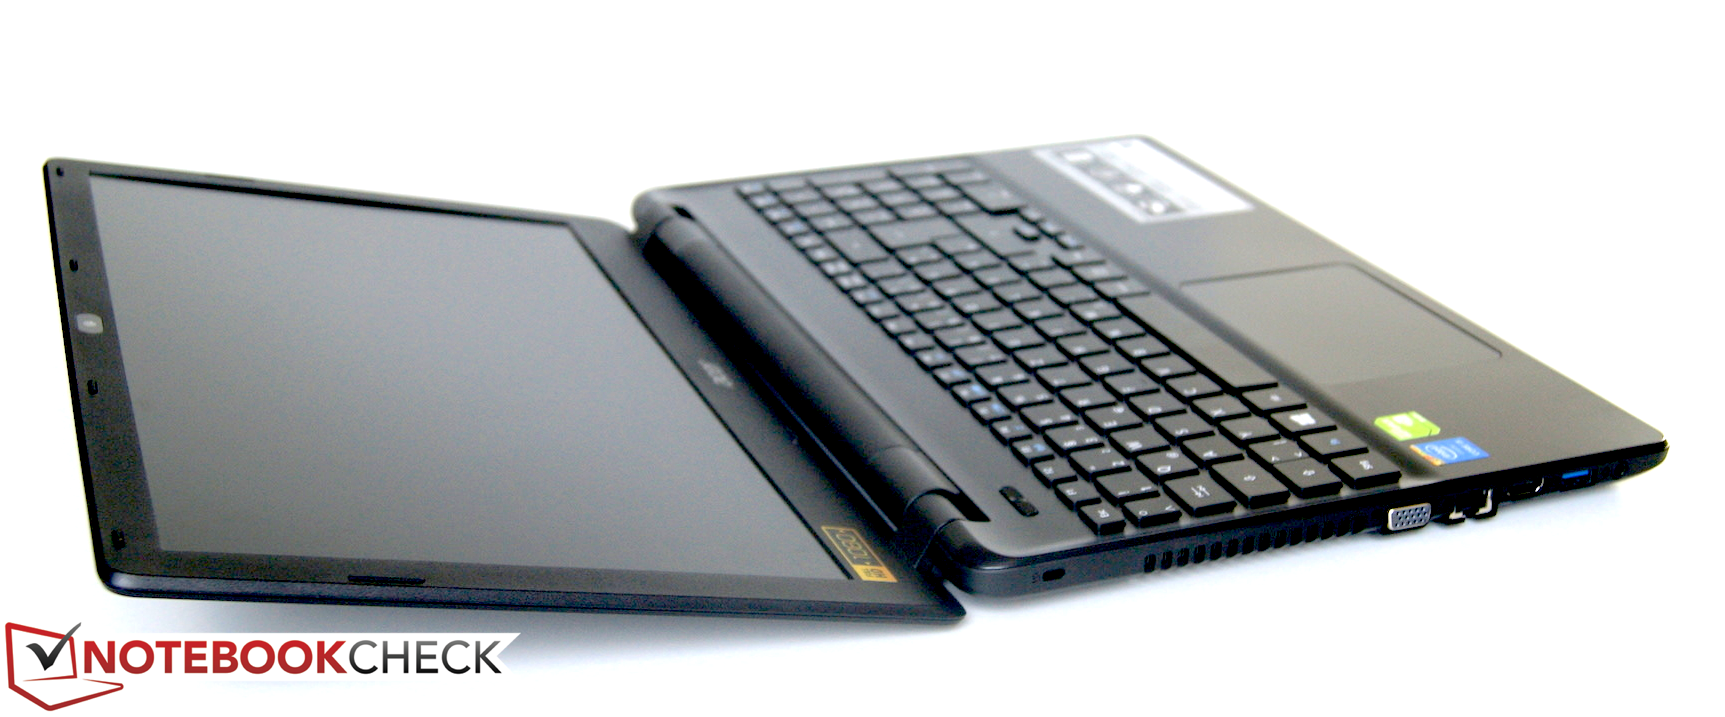 asfaltlama istek çizme  Acer Aspire E5-571G Notebook Review Update - NotebookCheck.net Reviews